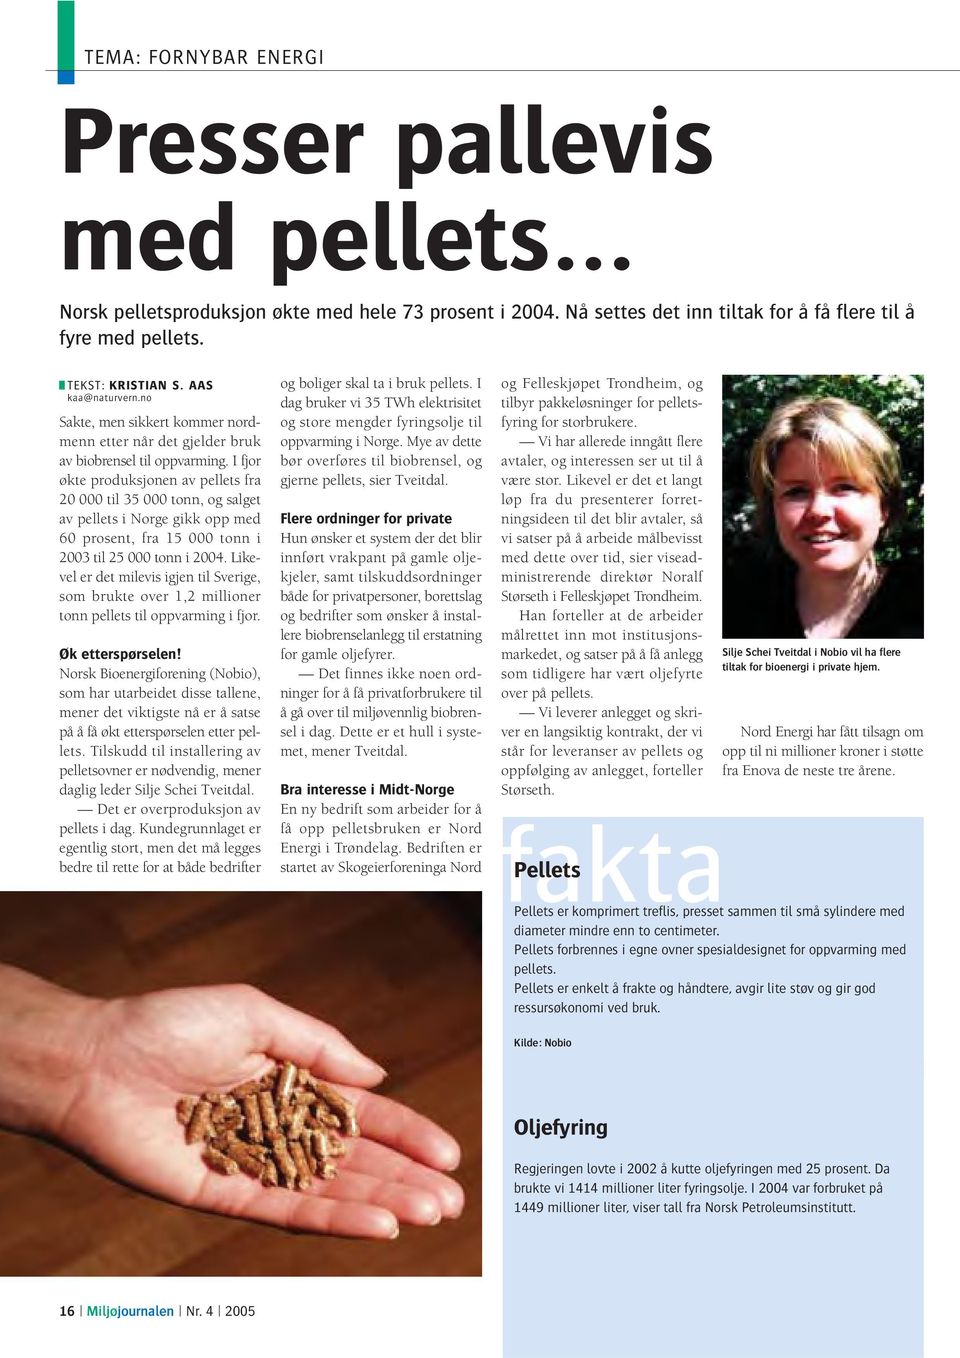 I fjor økte produksjonen av pellets fra 20 000 til 35 000 tonn, og salget av pellets i Norge gikk opp med 60 prosent, fra 15 000 tonn i 2003 til 25 000 tonn i 2004.